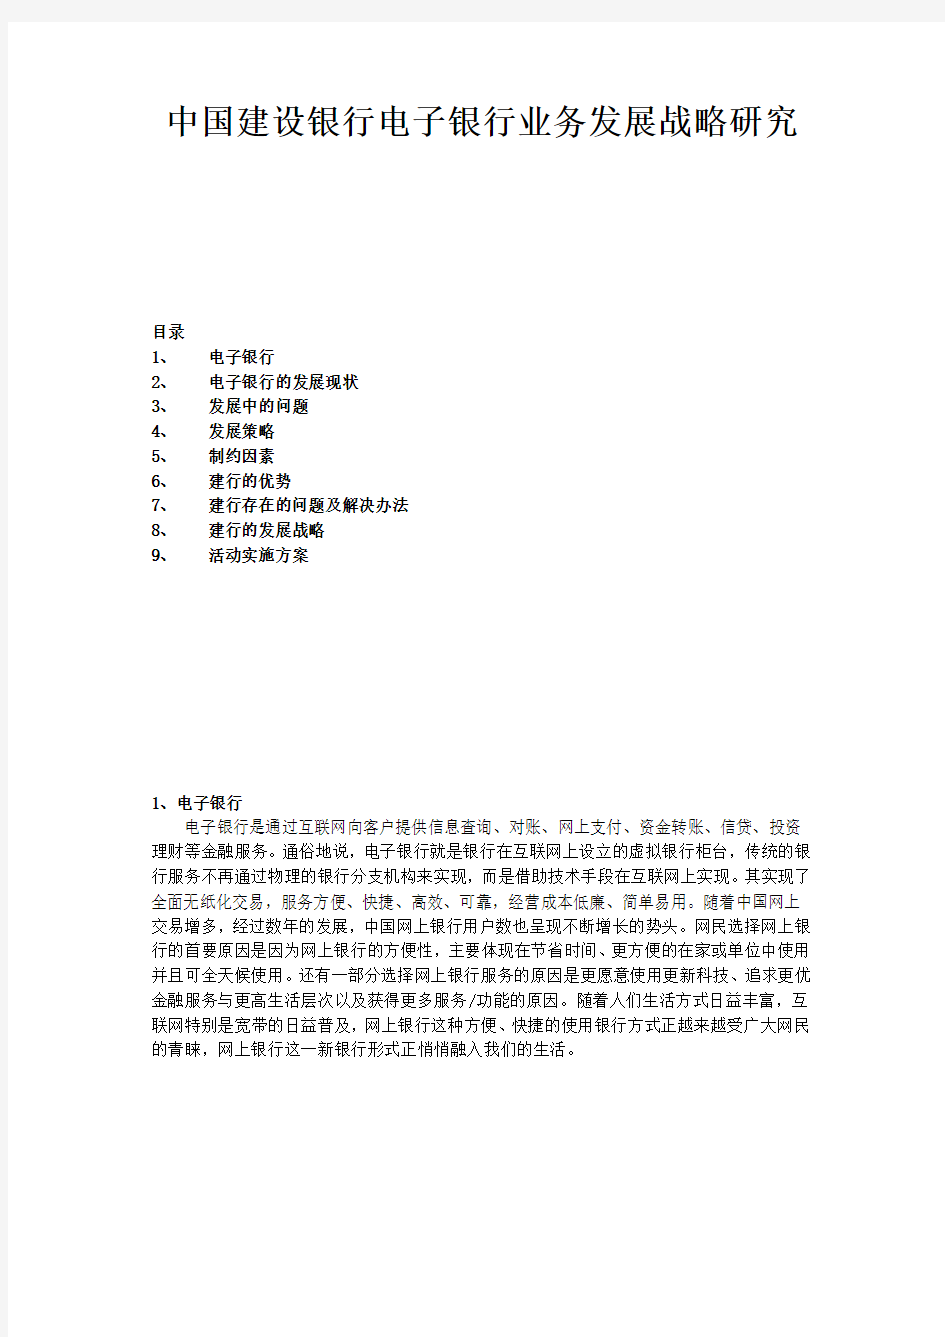 中国建设银行电子银行业务发展战略研究目录 精品